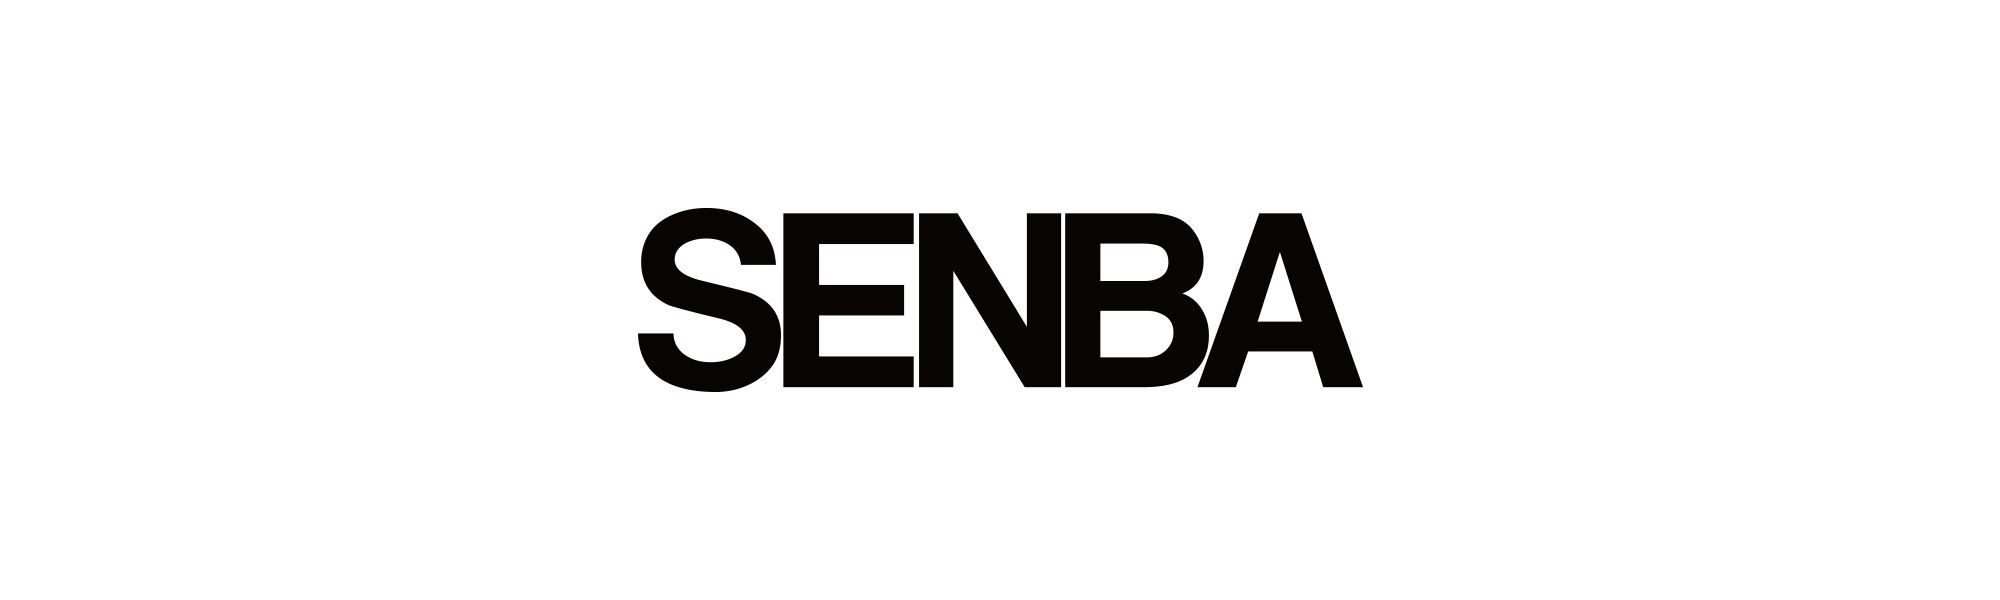 senba_logo